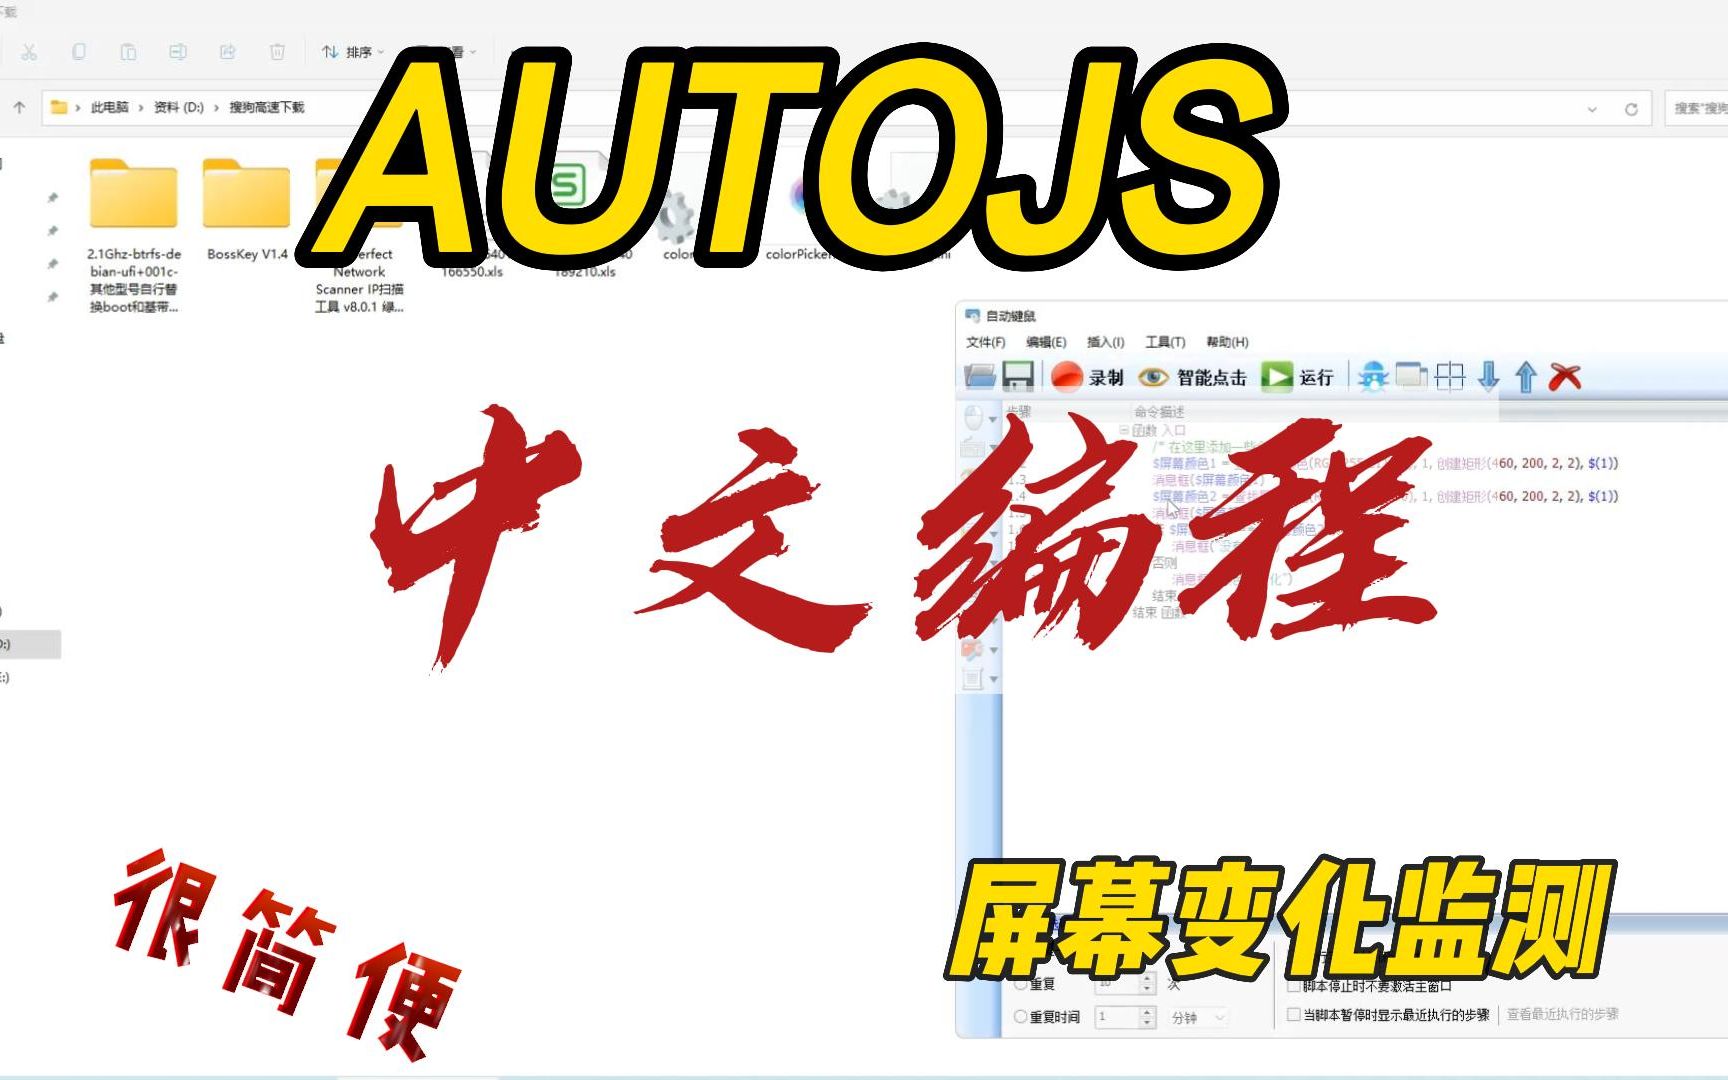 中文编程自动键鼠AUTOJS，检测屏幕固定位置颜色变化的小栗子